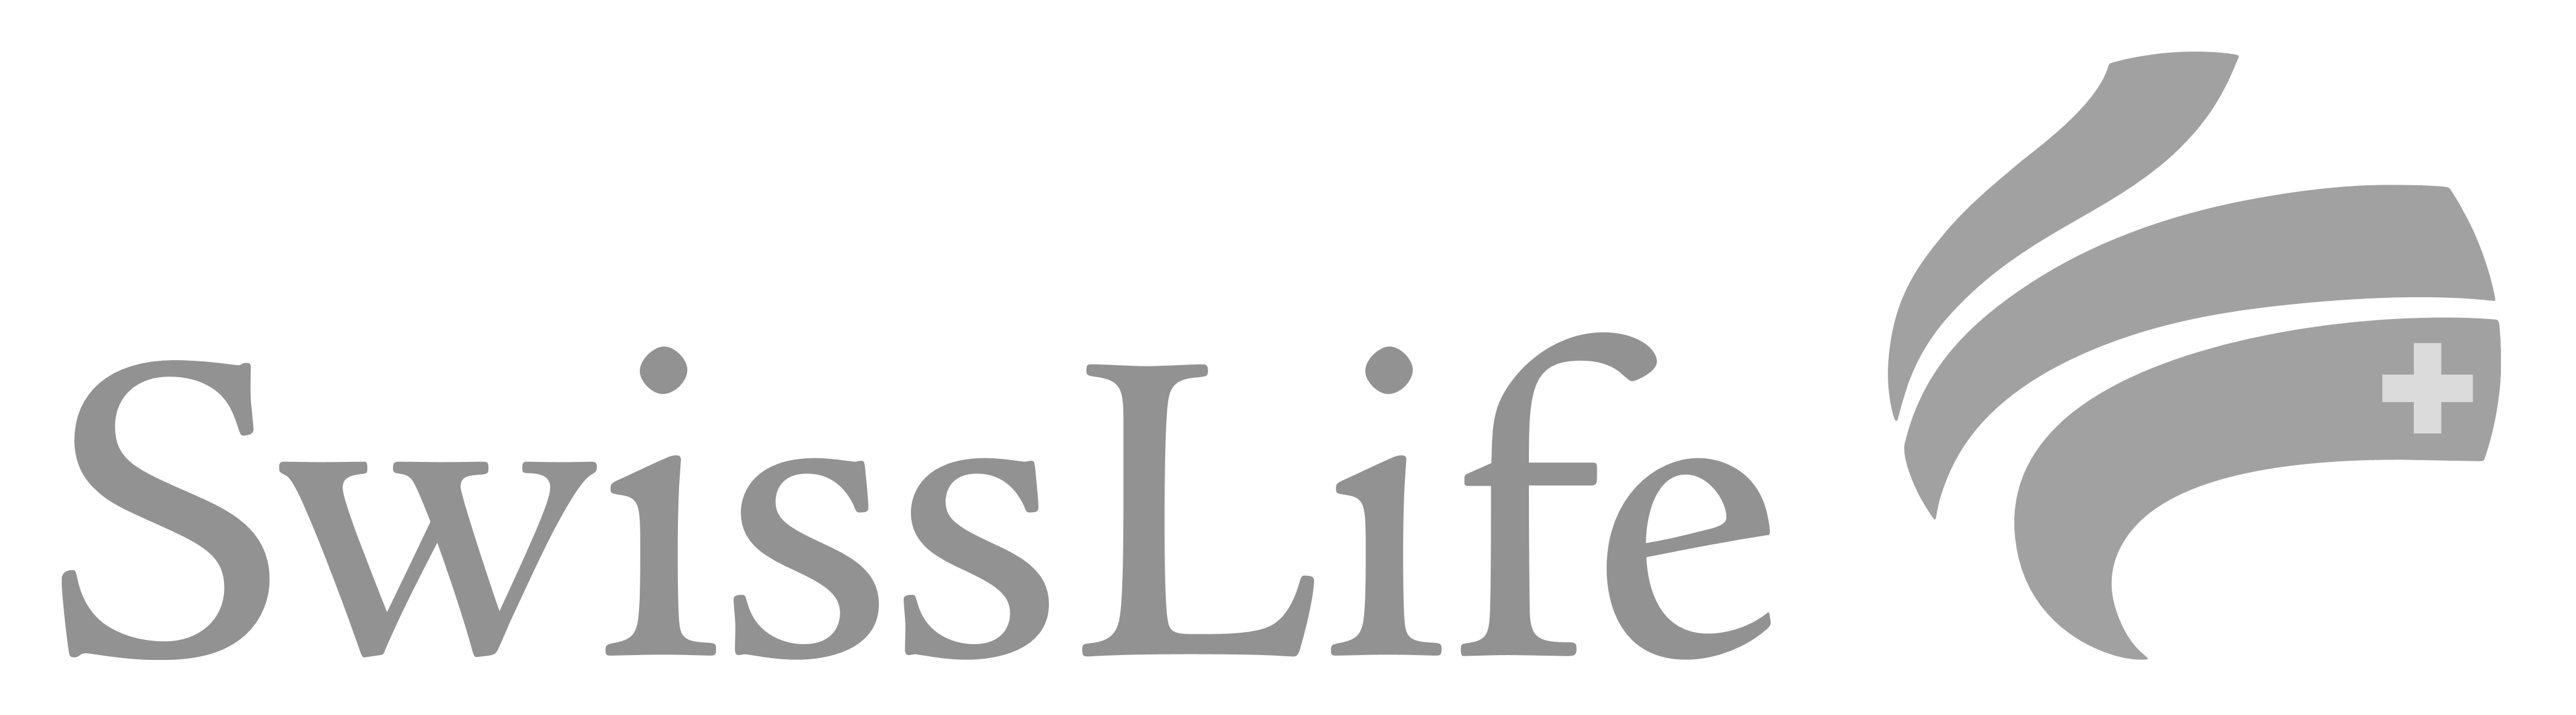 swiss_life_logo_logotype_swisslife (1)